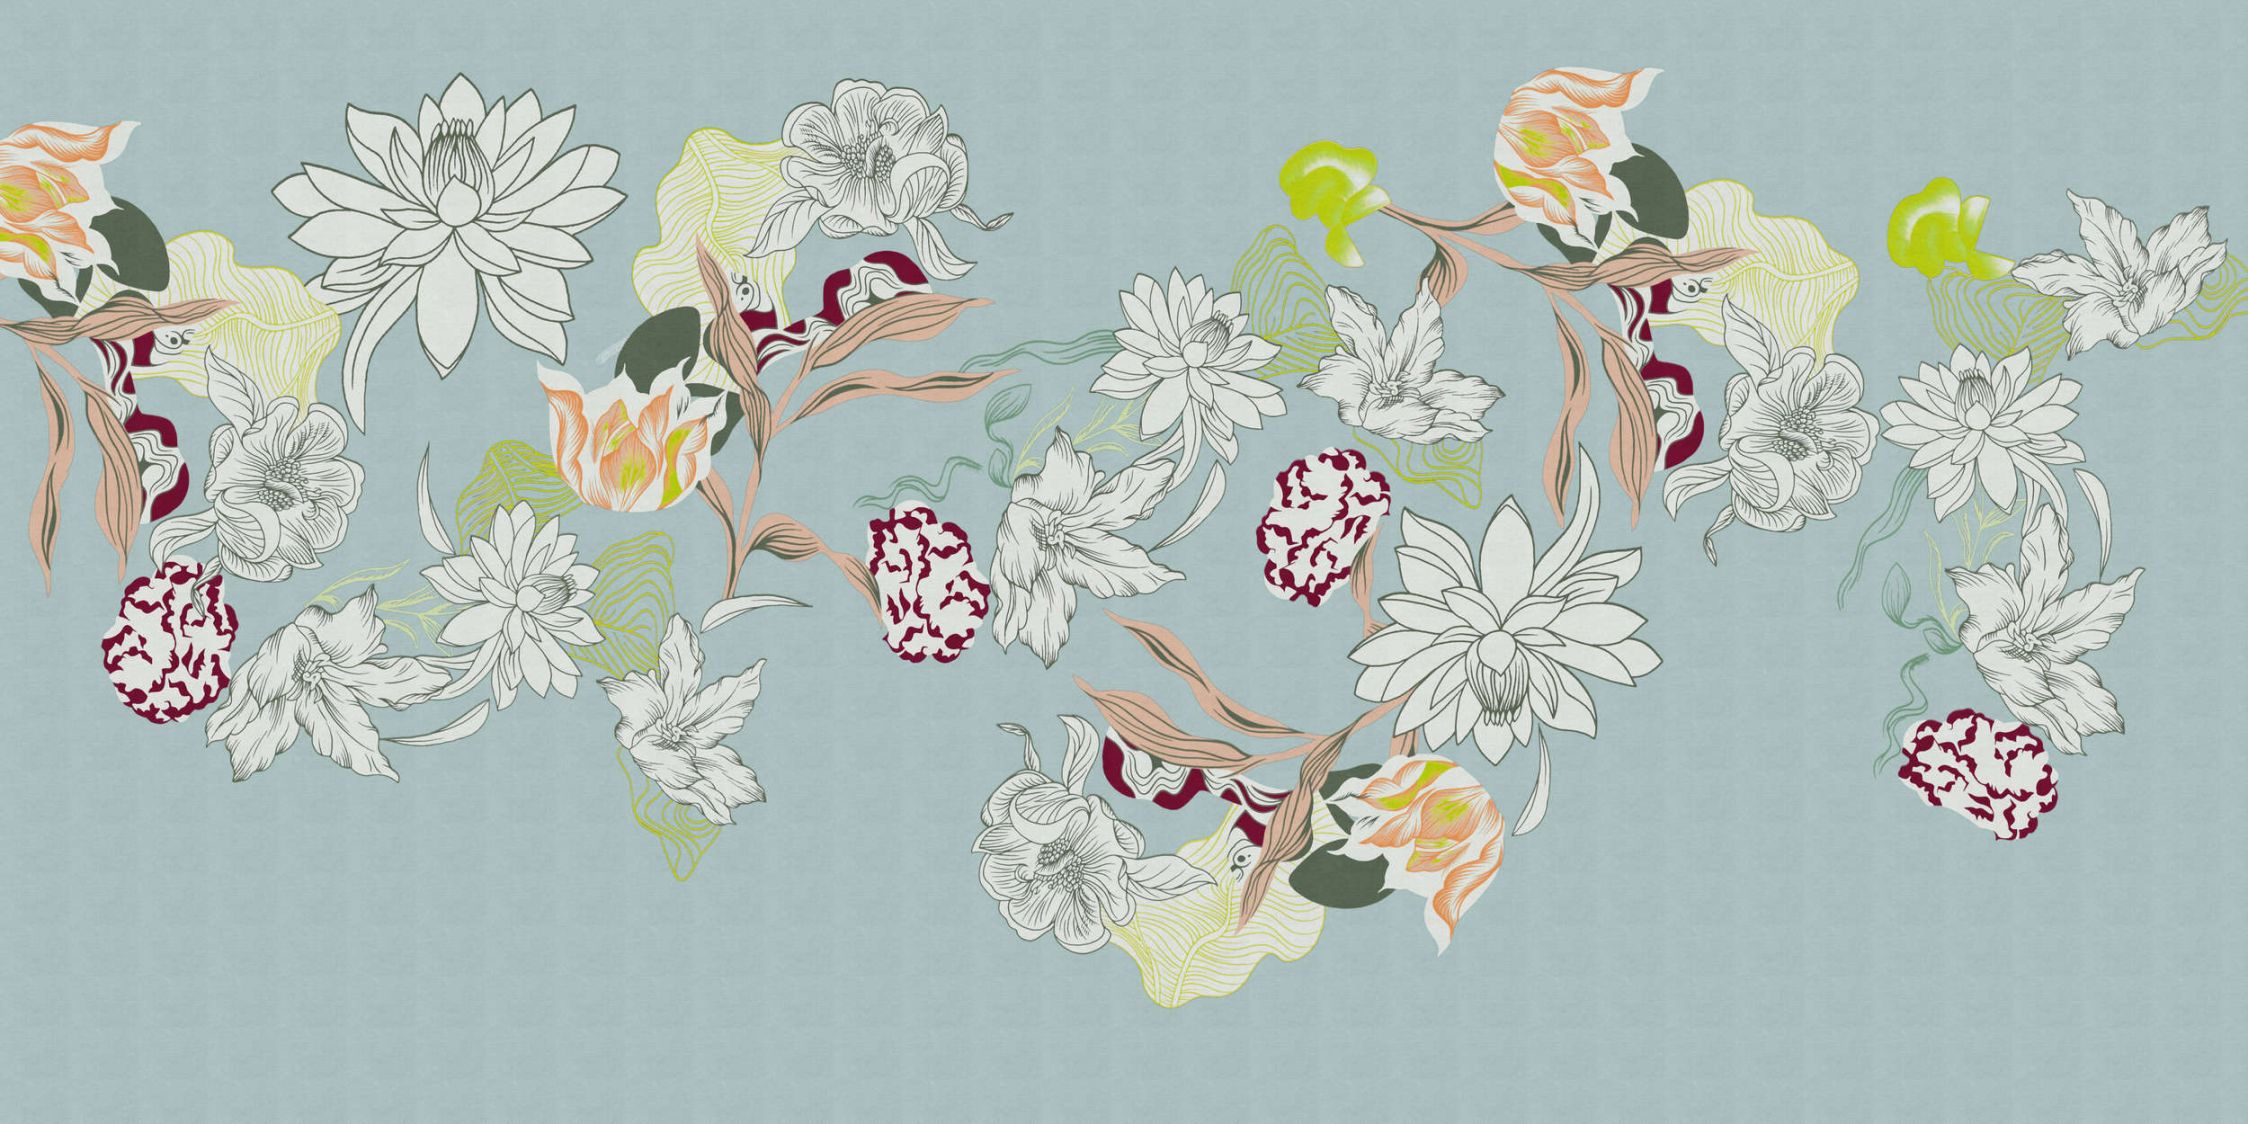             Carta da parati fotografica »botany 2« - Motivi floreali astratti con accenti verdi su una sottile trama di lino - Materiali non tessuto liscio e leggermente perlato
        